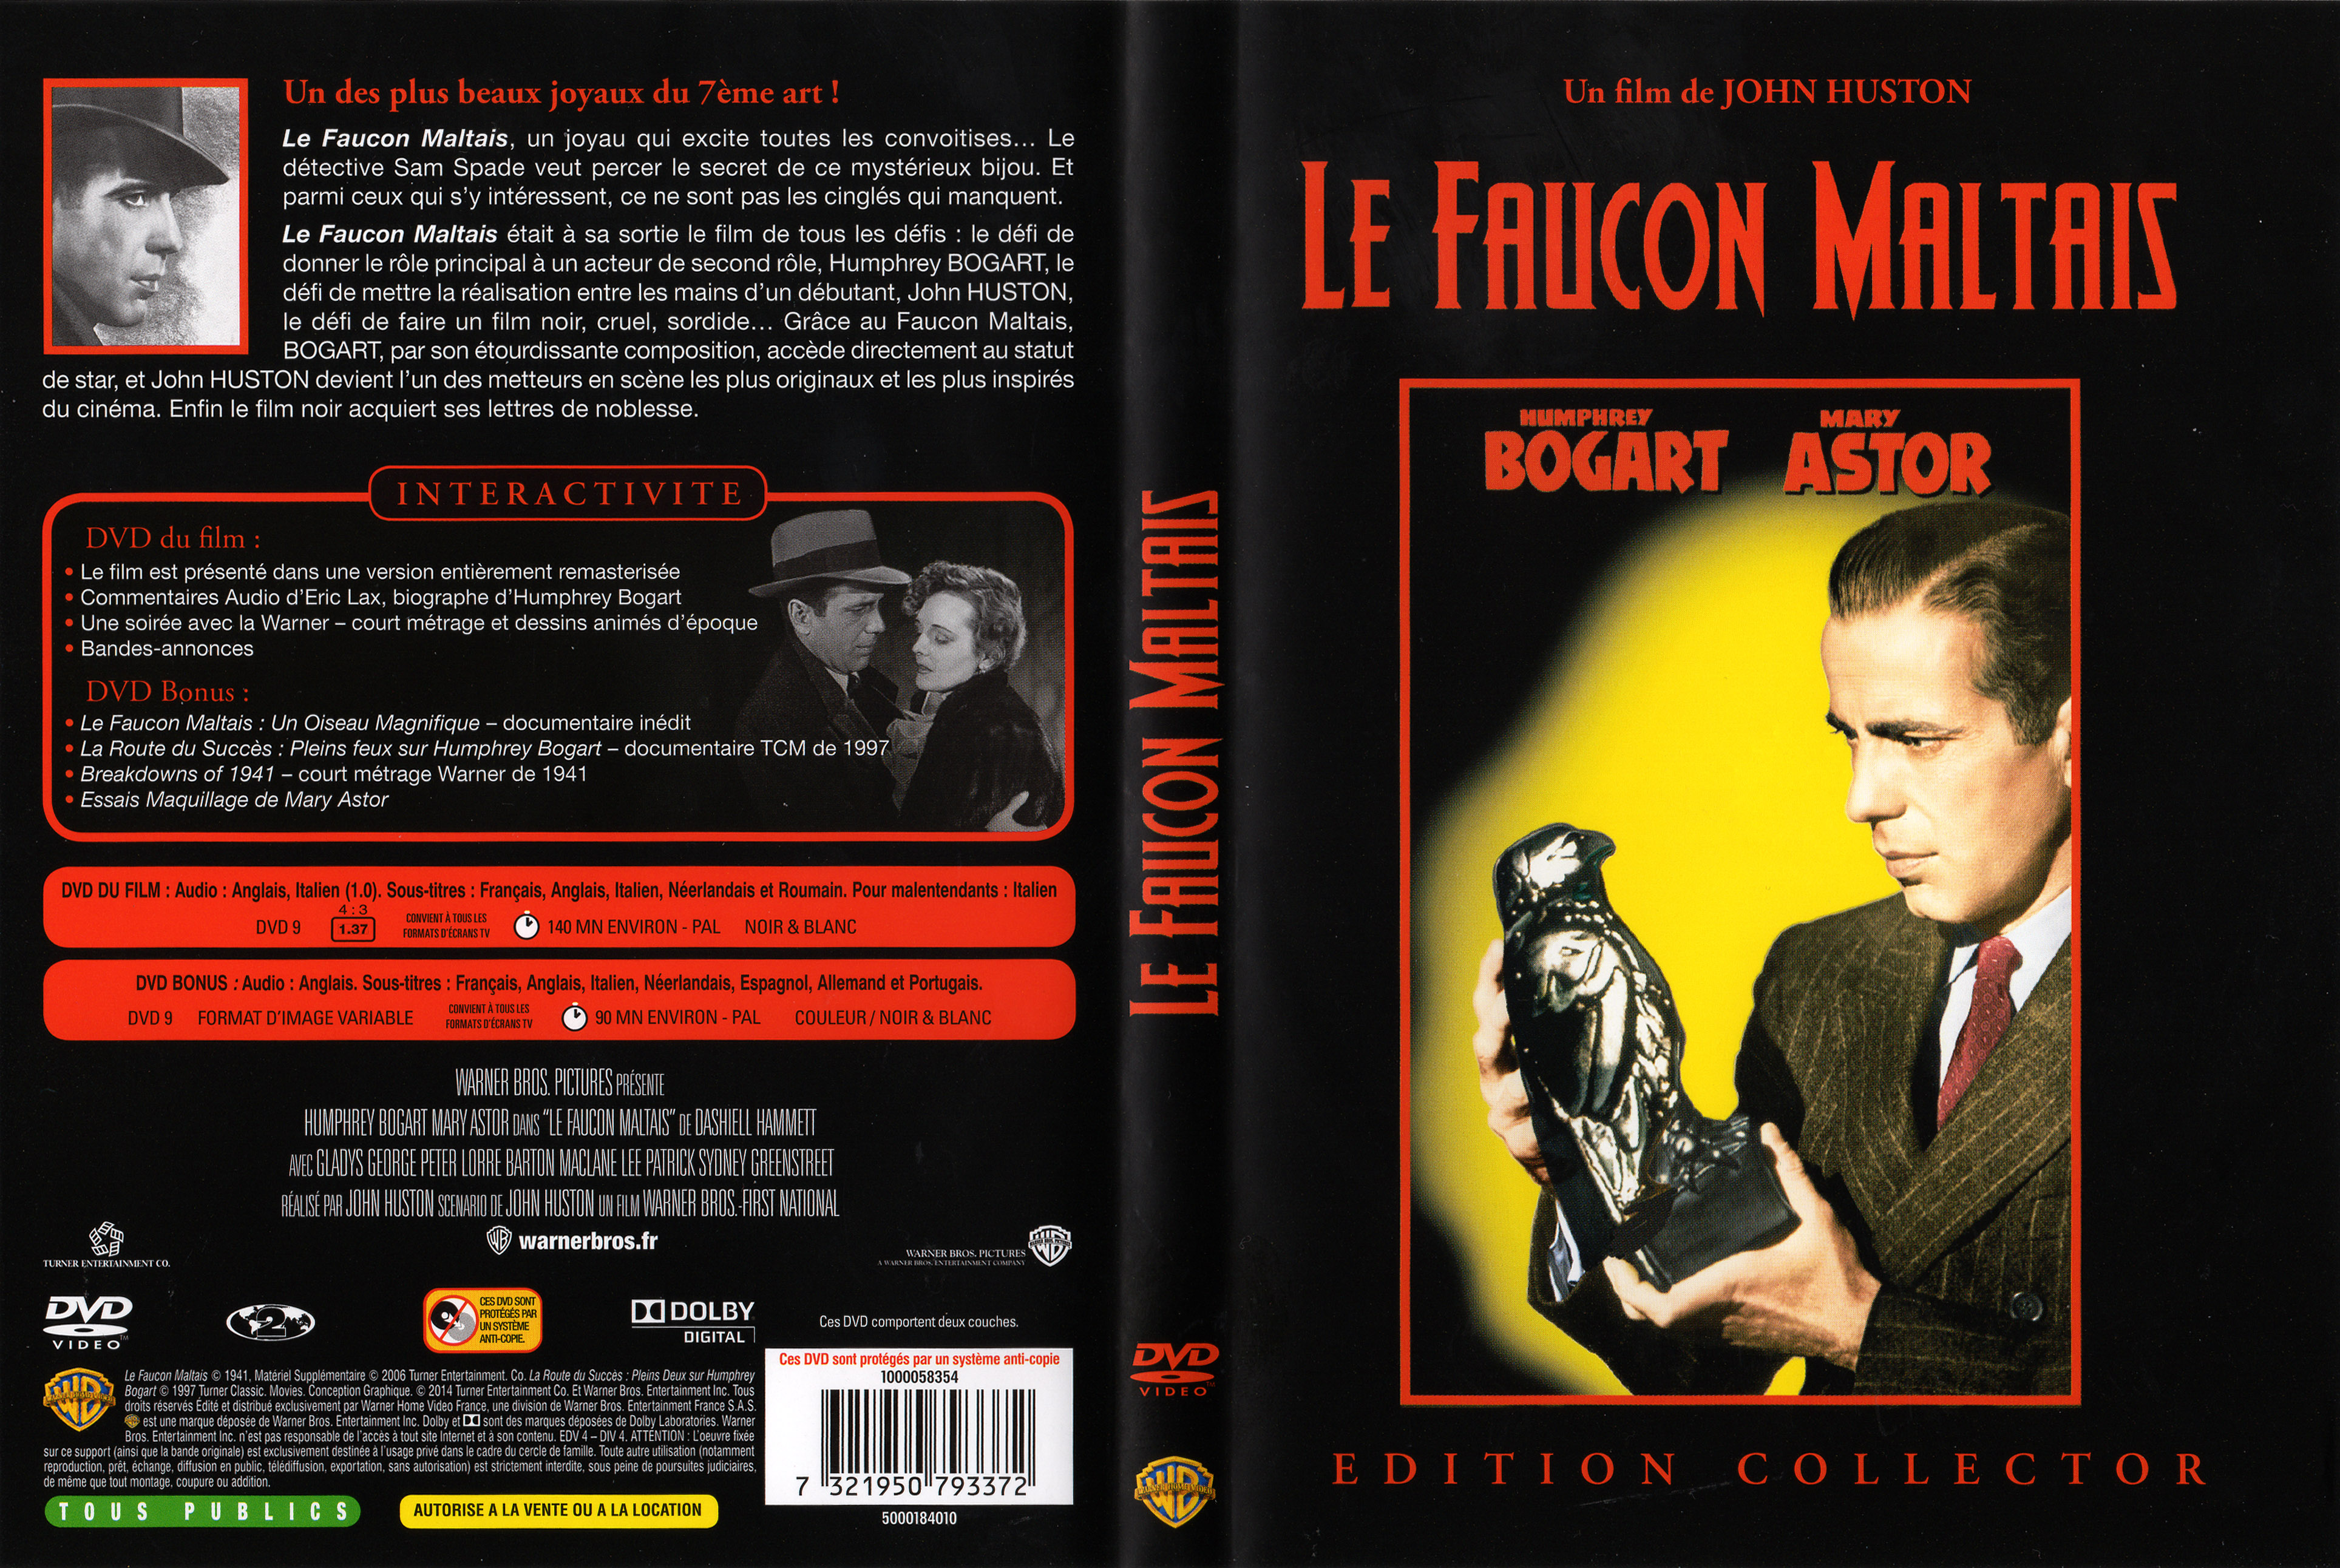 Jaquette DVD Le Faucon Maltais v3